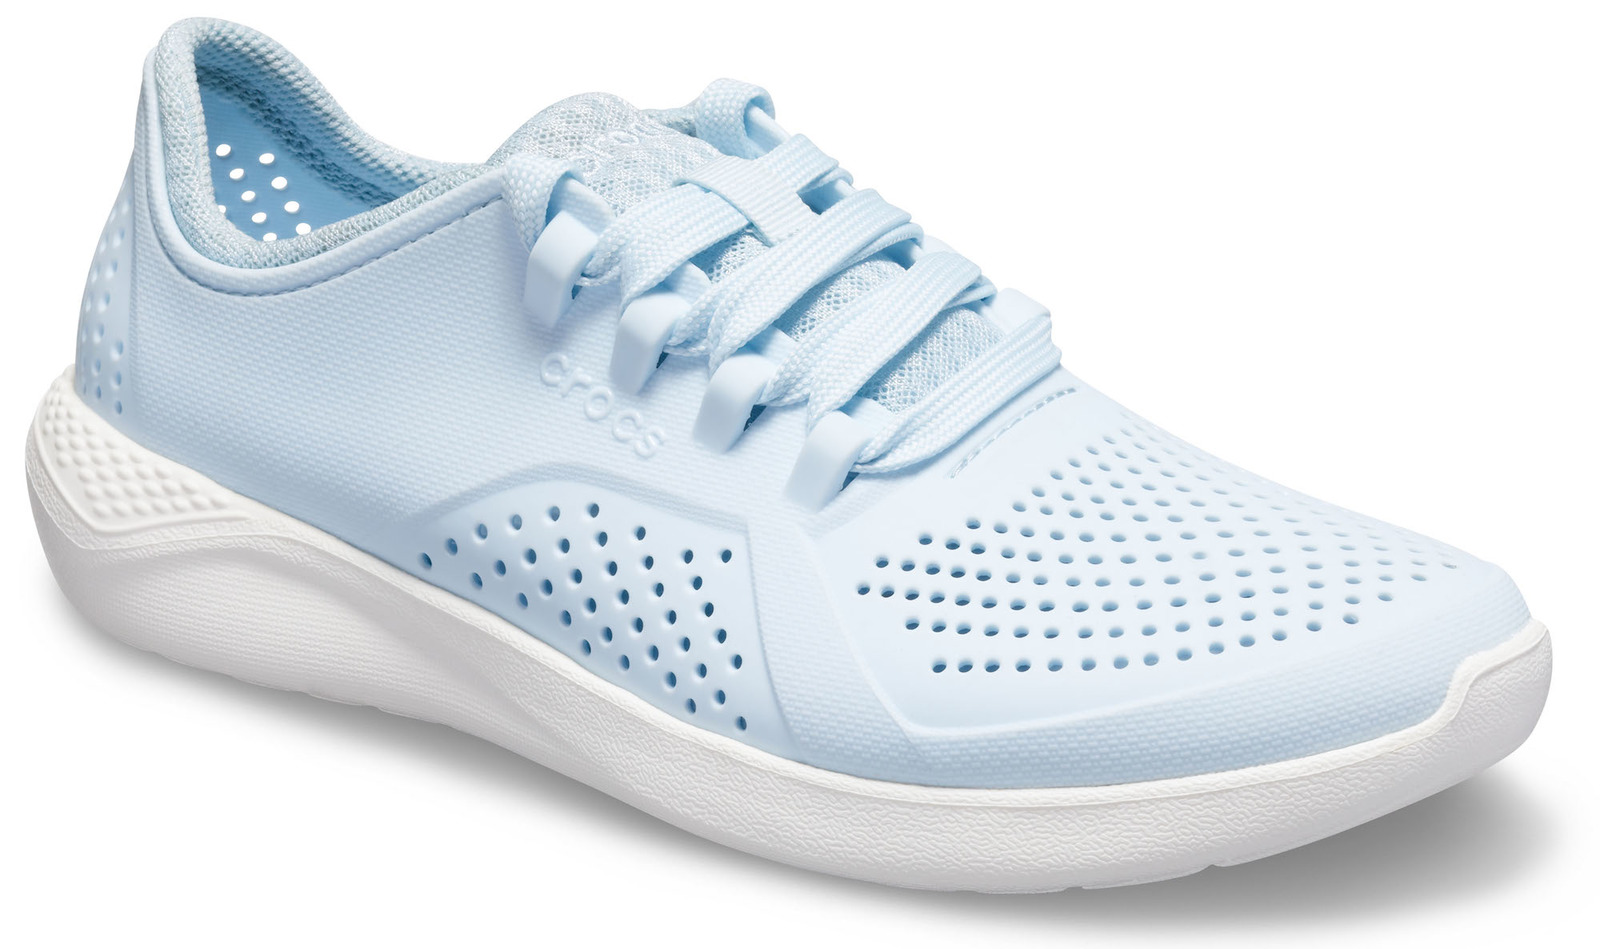 Crocs blue sneakers LiteRide pacer Mineral Mavi / Beyaz  205234-4